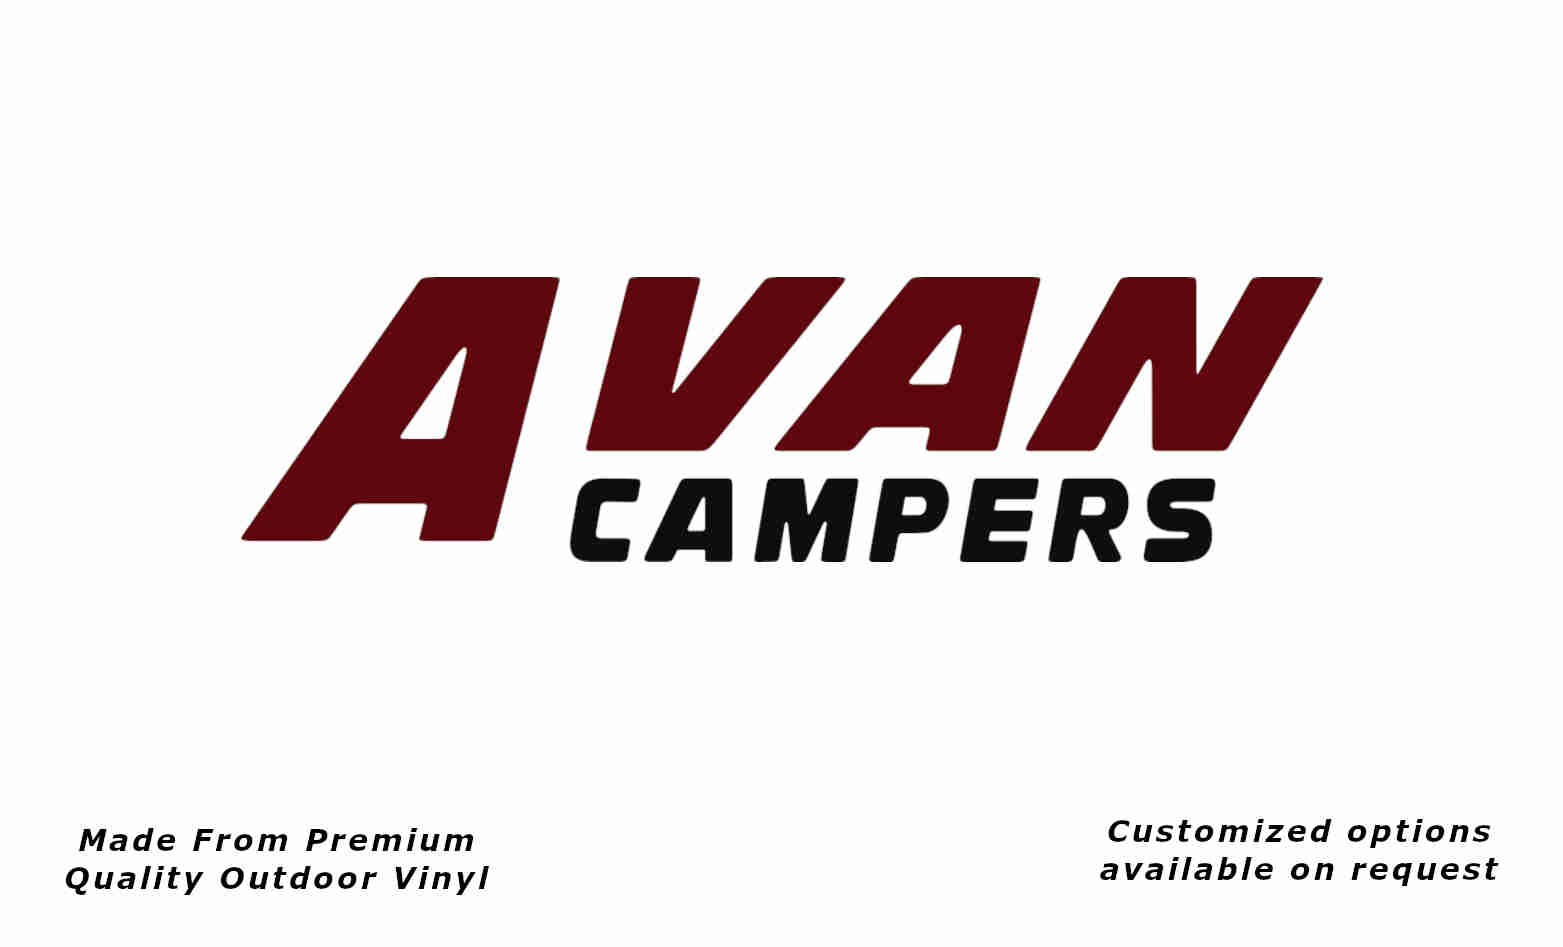 Avan campers caravan replacement vinyl decal sticker in purple red and black.